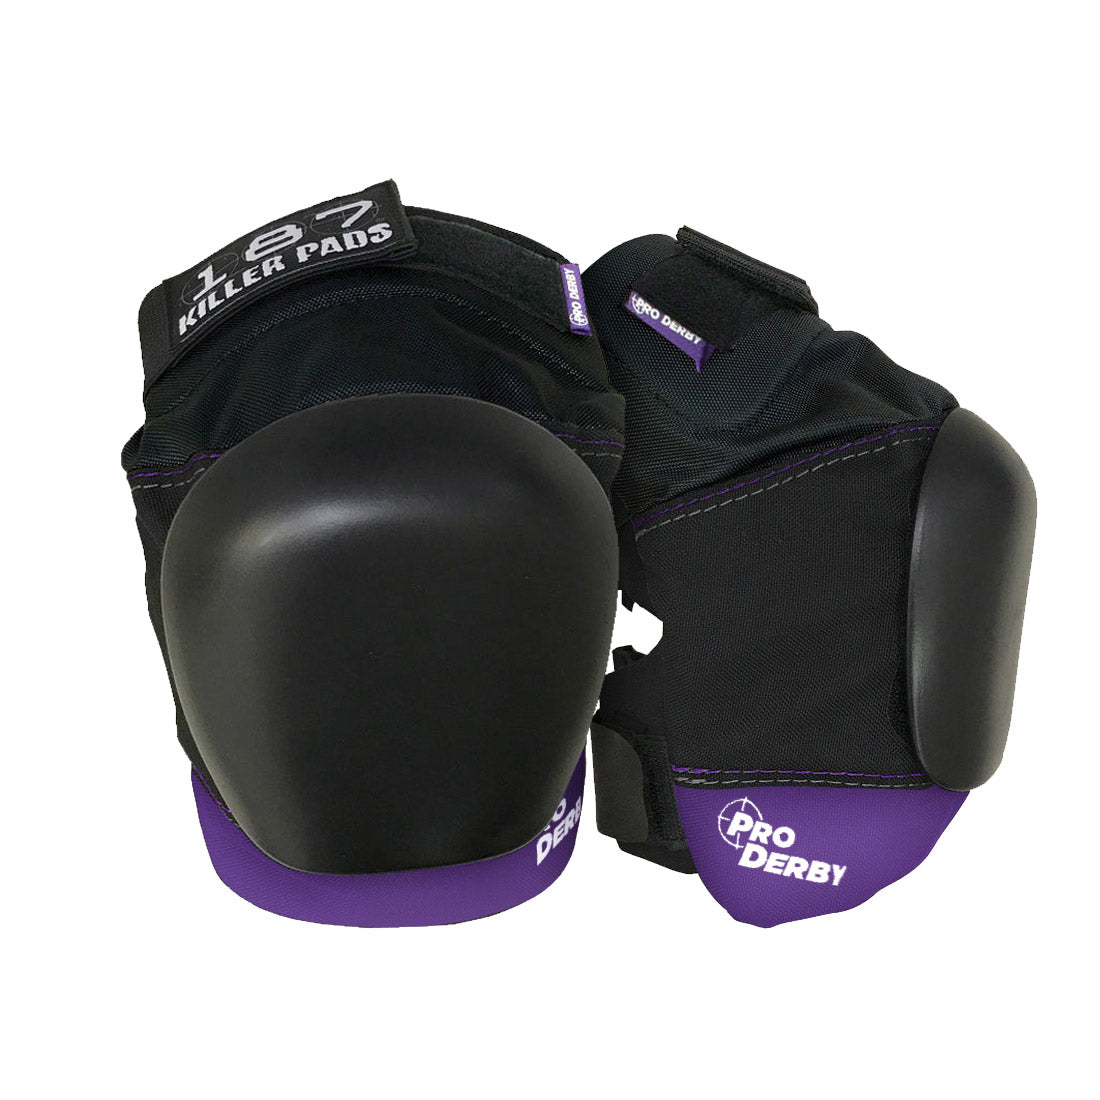 187 Pro Derby Knee - Black/Purple